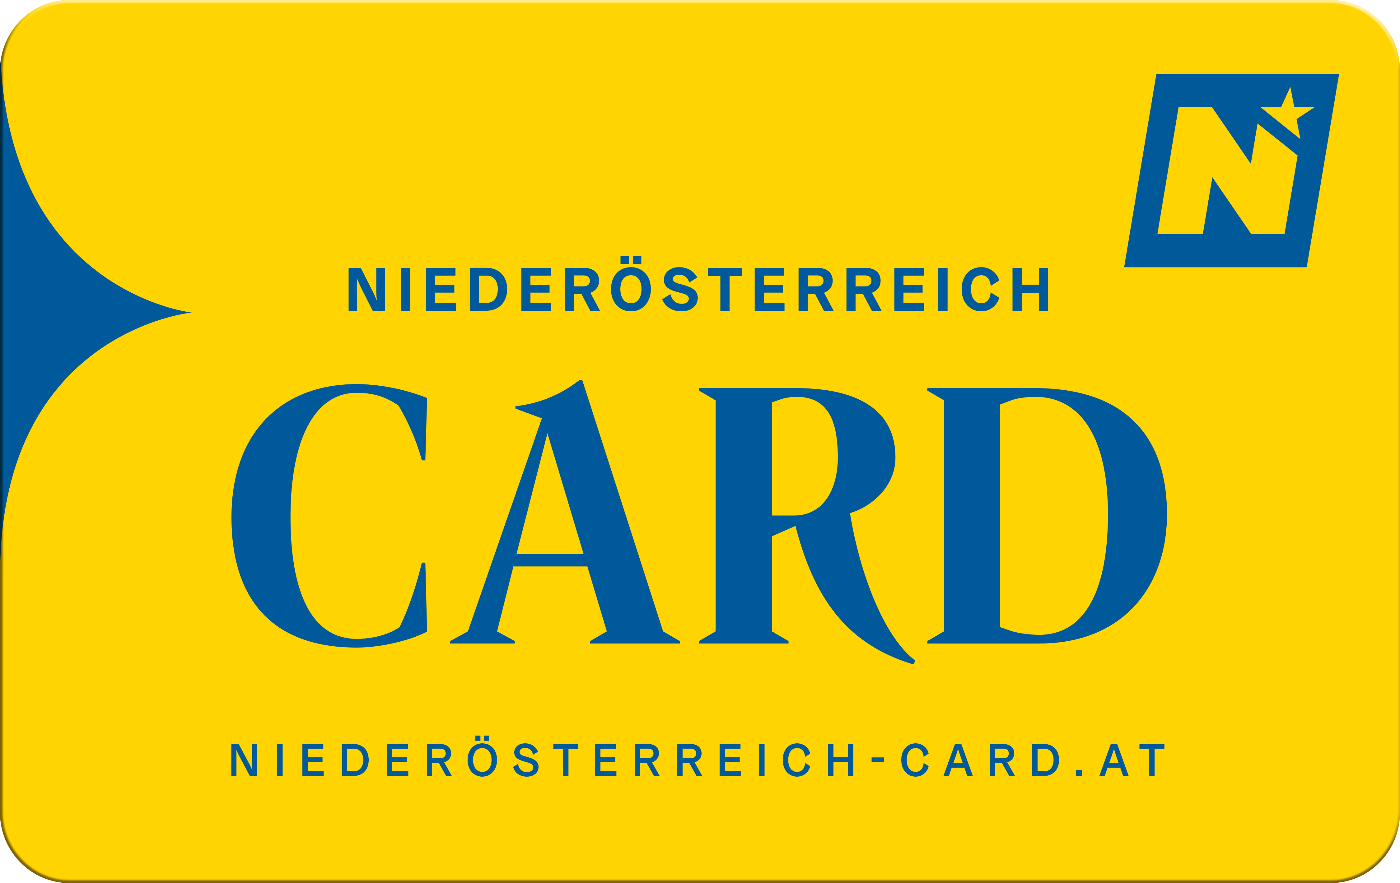 Sujet der Niederösterreich Card